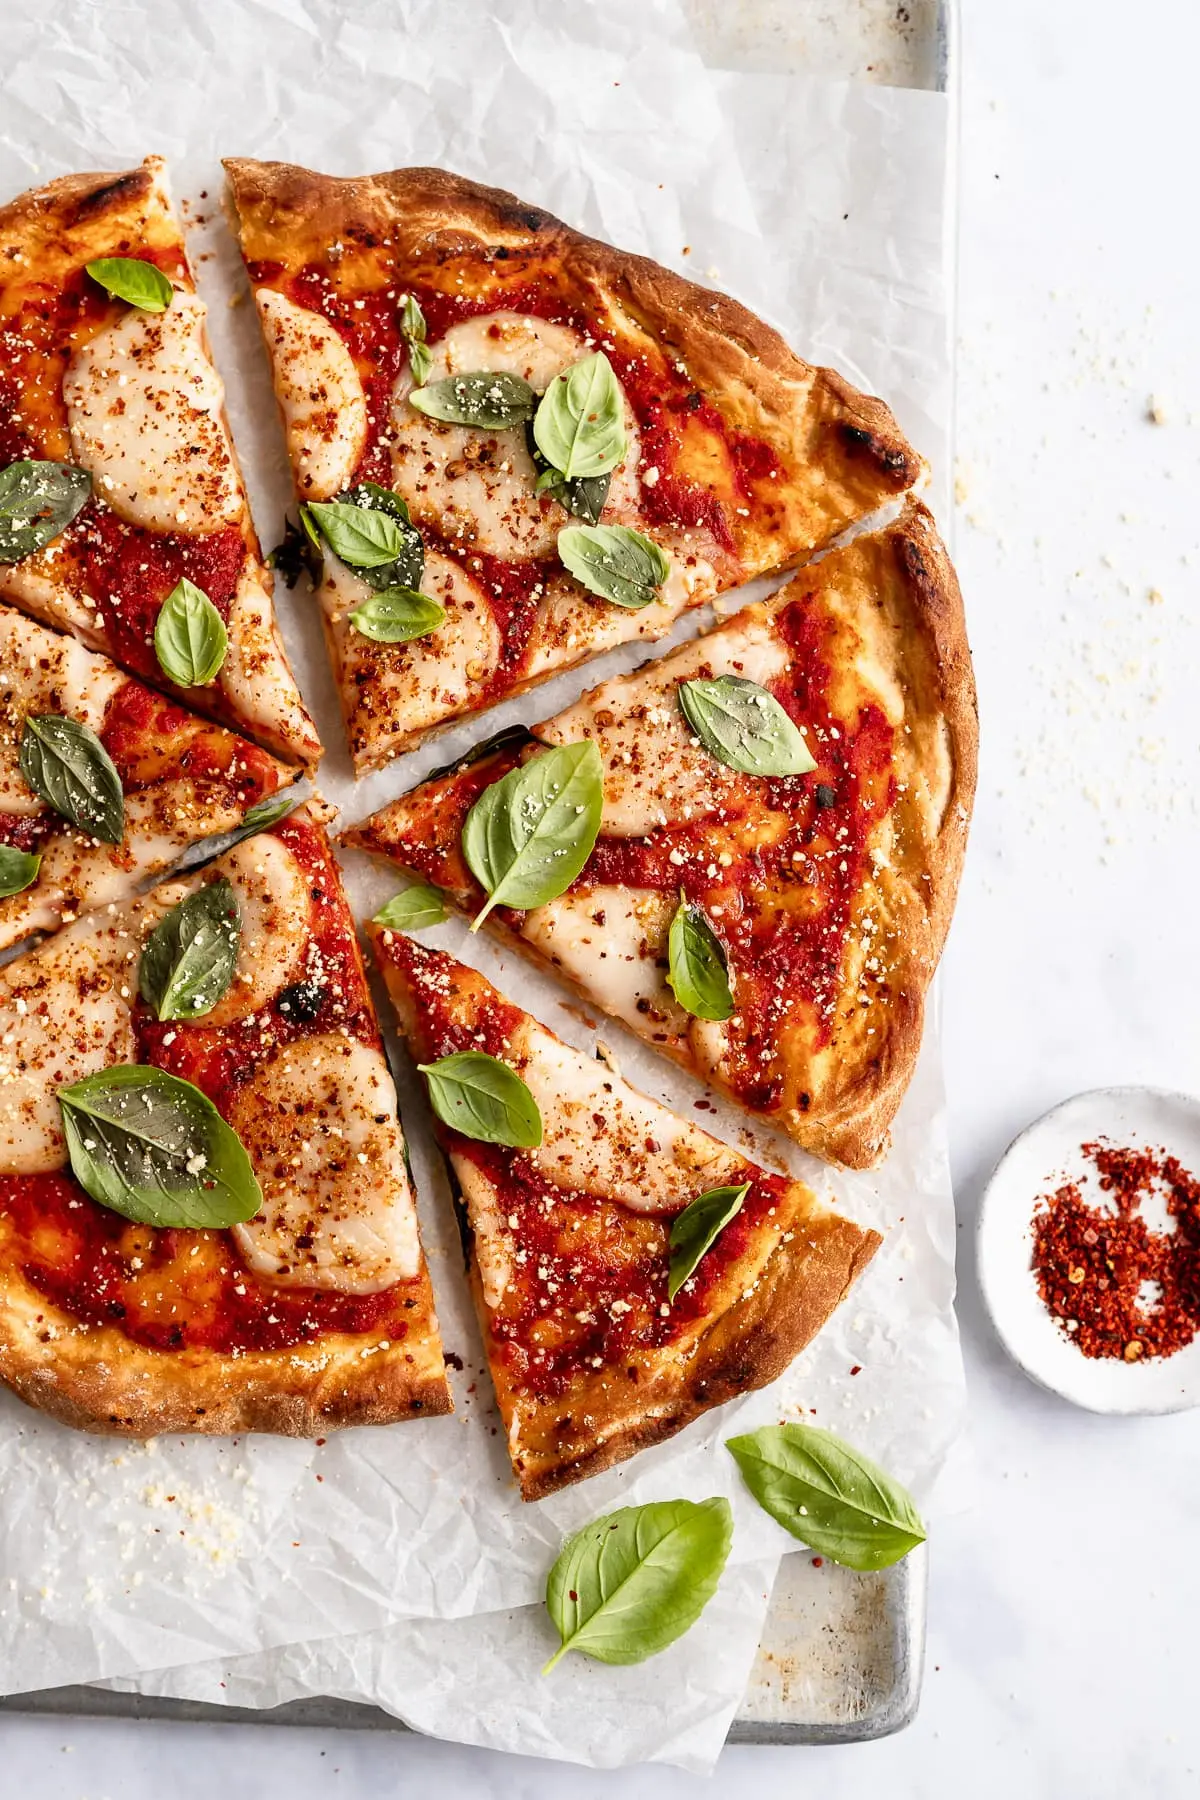 best vegan pizza - What do vegans eat for pizza